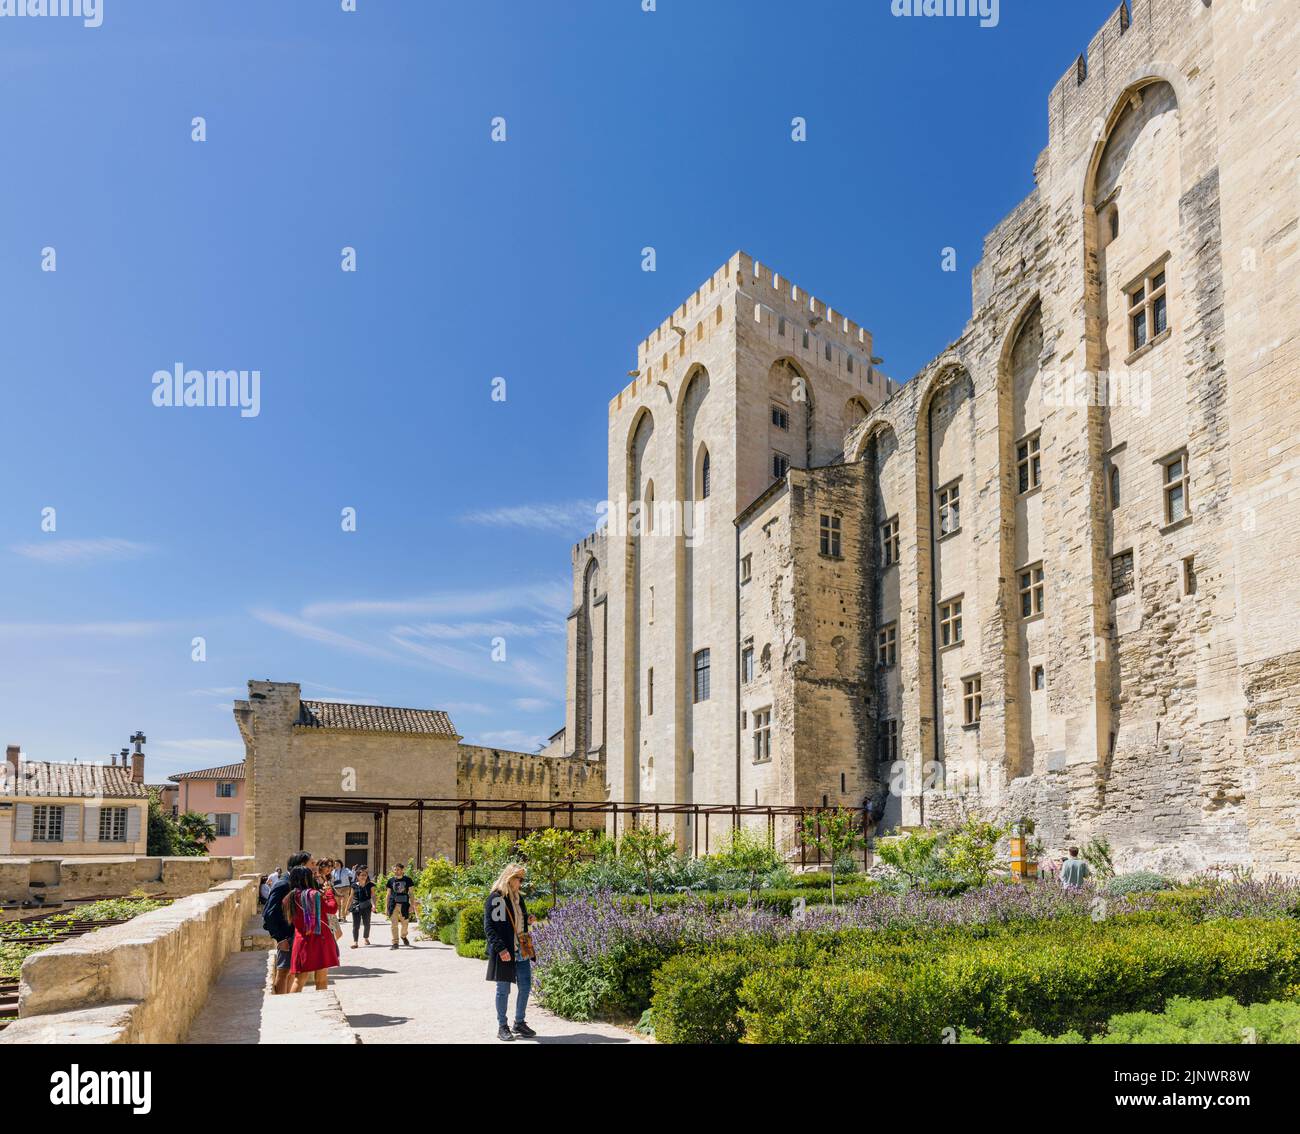 Los jardines del Palais des Papes - Palacio de los Papas, Avignon, Vaucluse, Francia. El centro histórico de Aviñón está declarado Patrimonio de la Humanidad por la UNESCO. Foto de stock